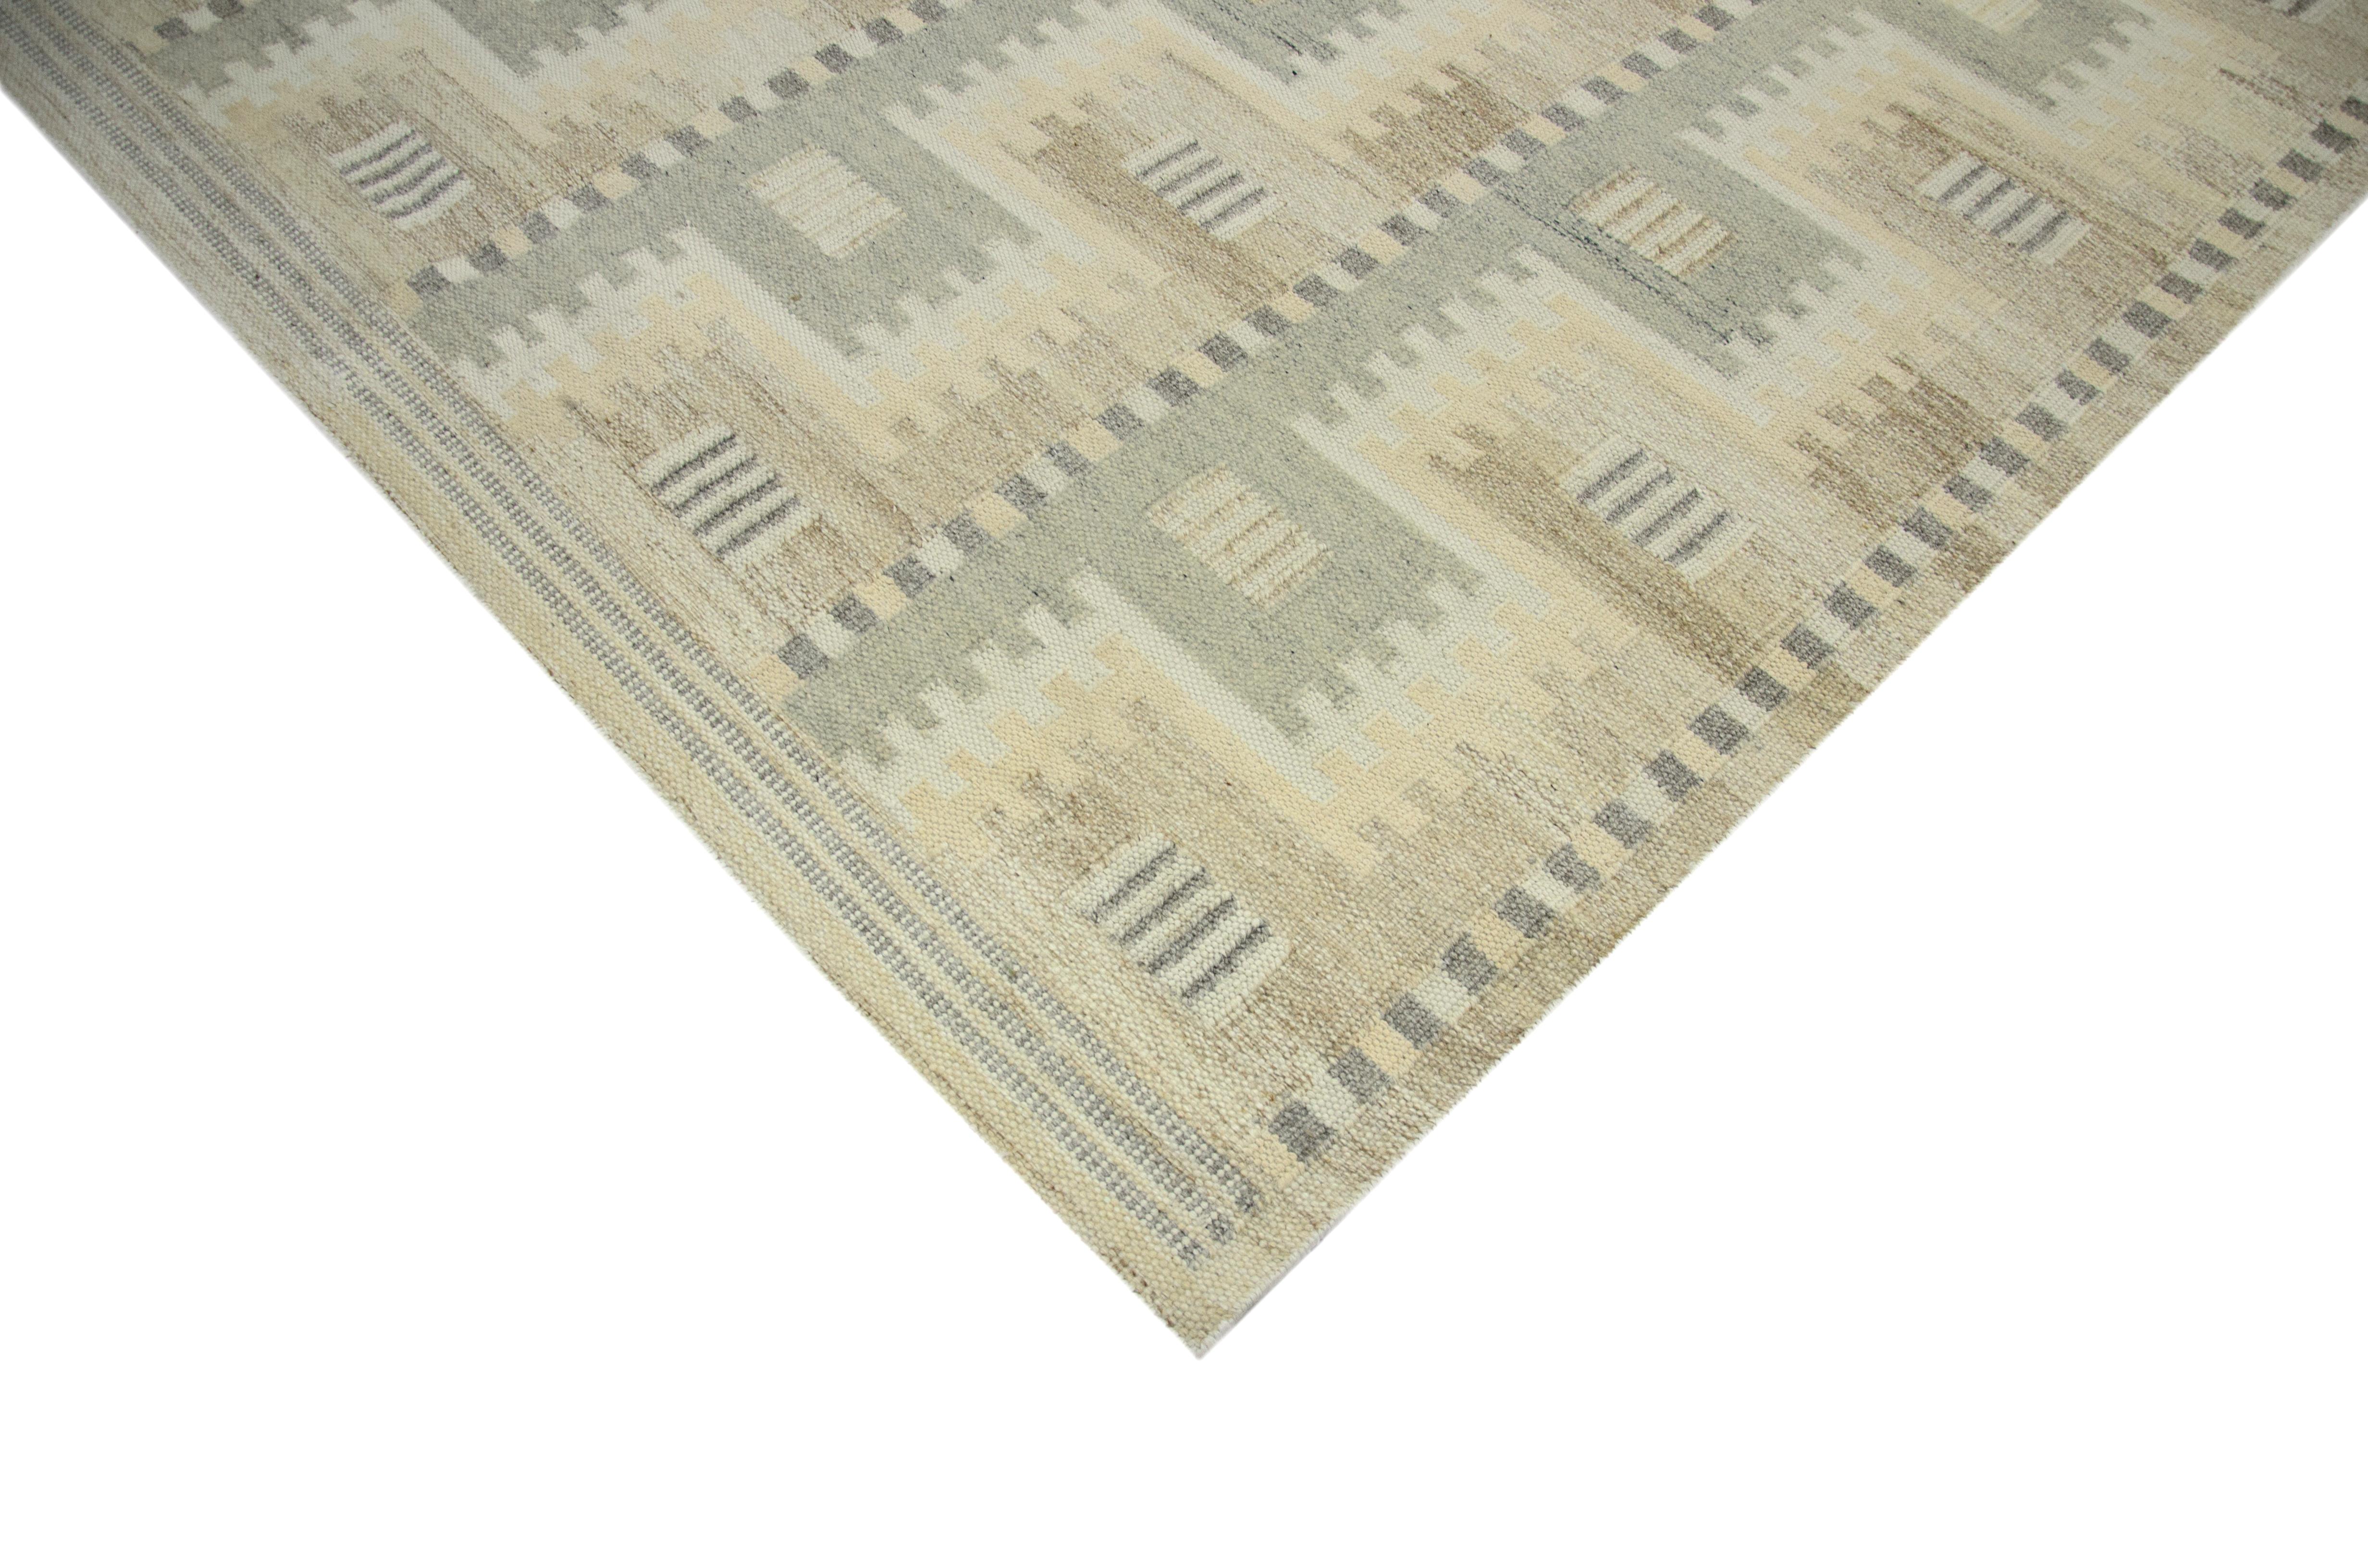 Modern Area Rug ist ein handgewebter Teppich im skandinavischen Design aus feiner Wolle und organischen Farbstoffen. Es zeigt ein exquisites elfenbeinfarbenes Feld mit geometrischen Mustern in Grau und Braun. Dieses Stück wird in modernen und